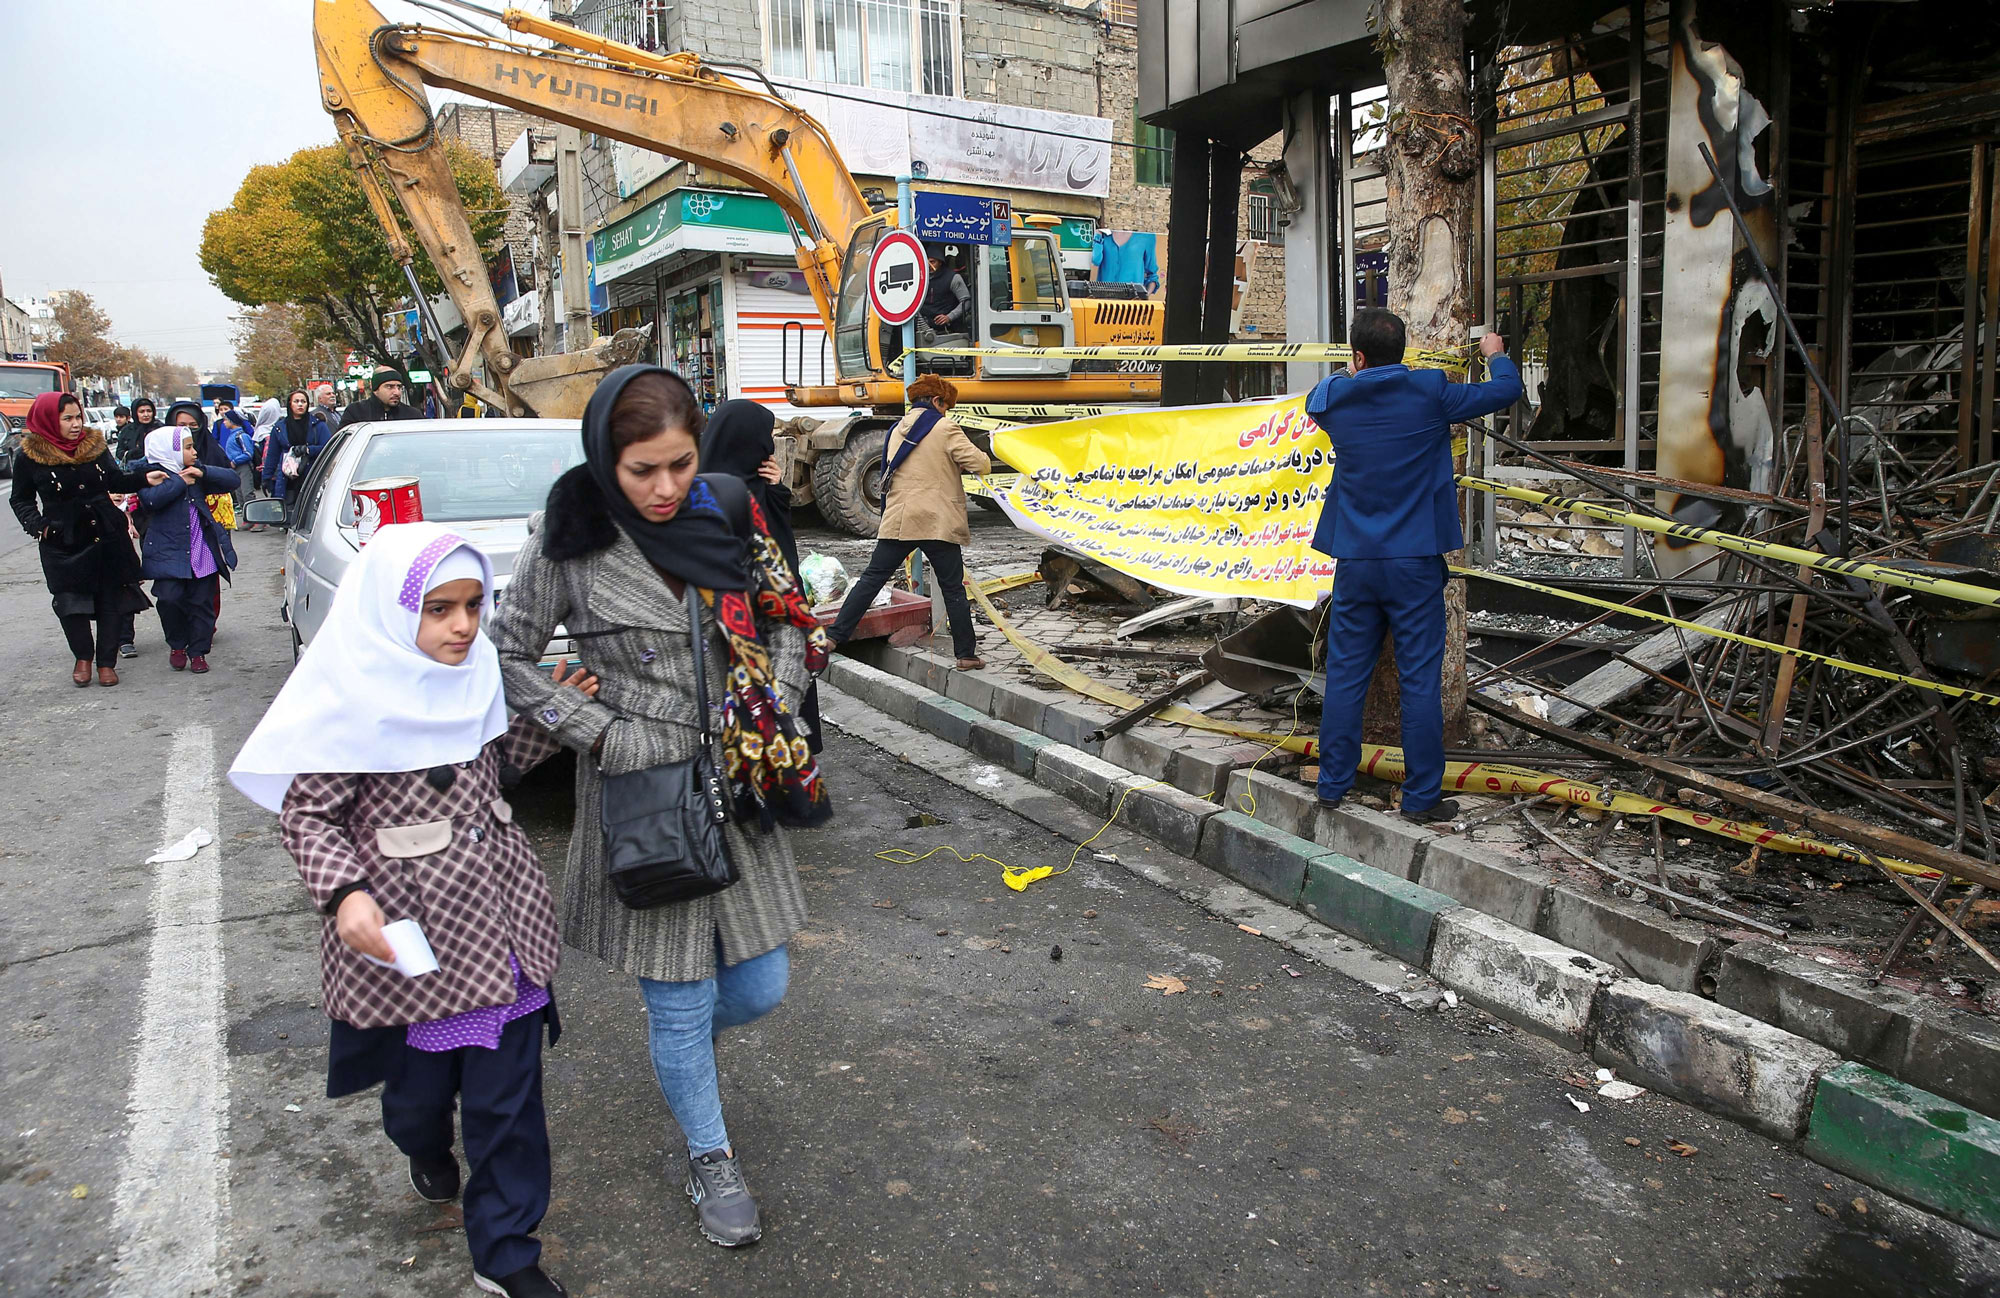 طهران تبرر قمع احتجاجات شعبية بذريعة أنها من صنيعة مخربين و"أشرار"